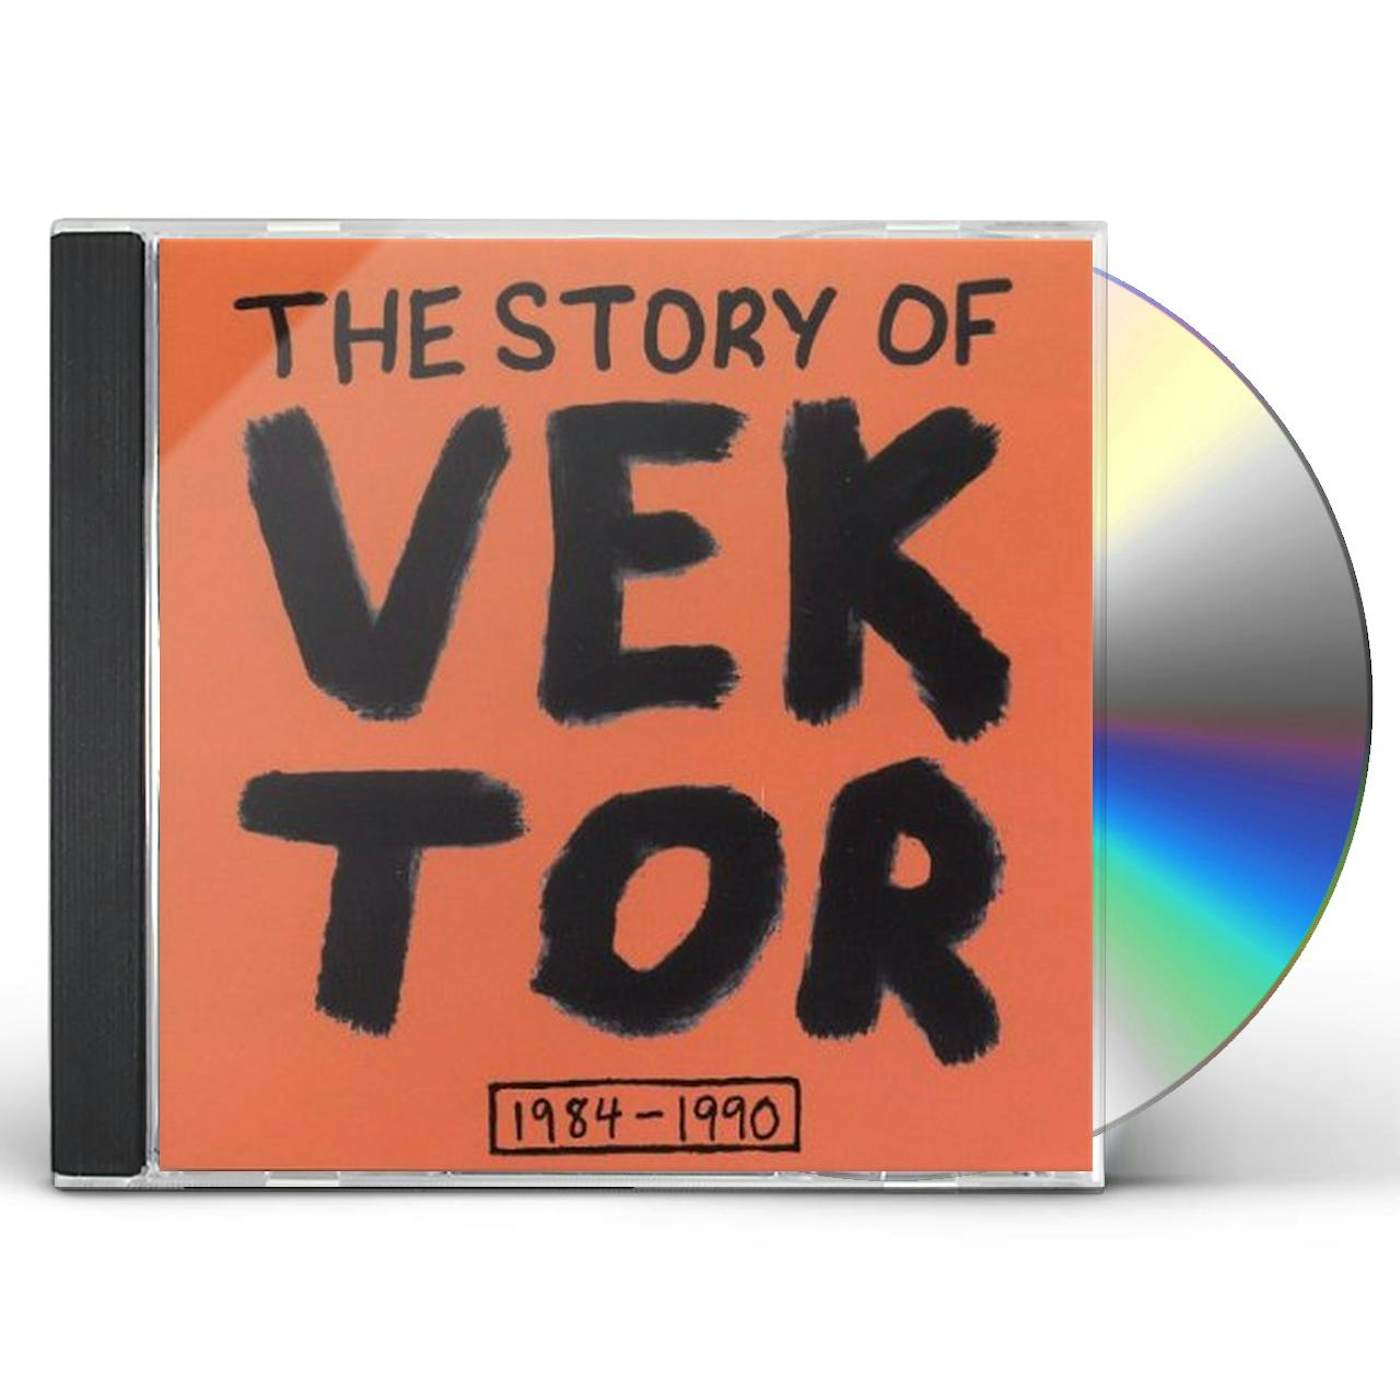 STORY OF VEKTOR CD